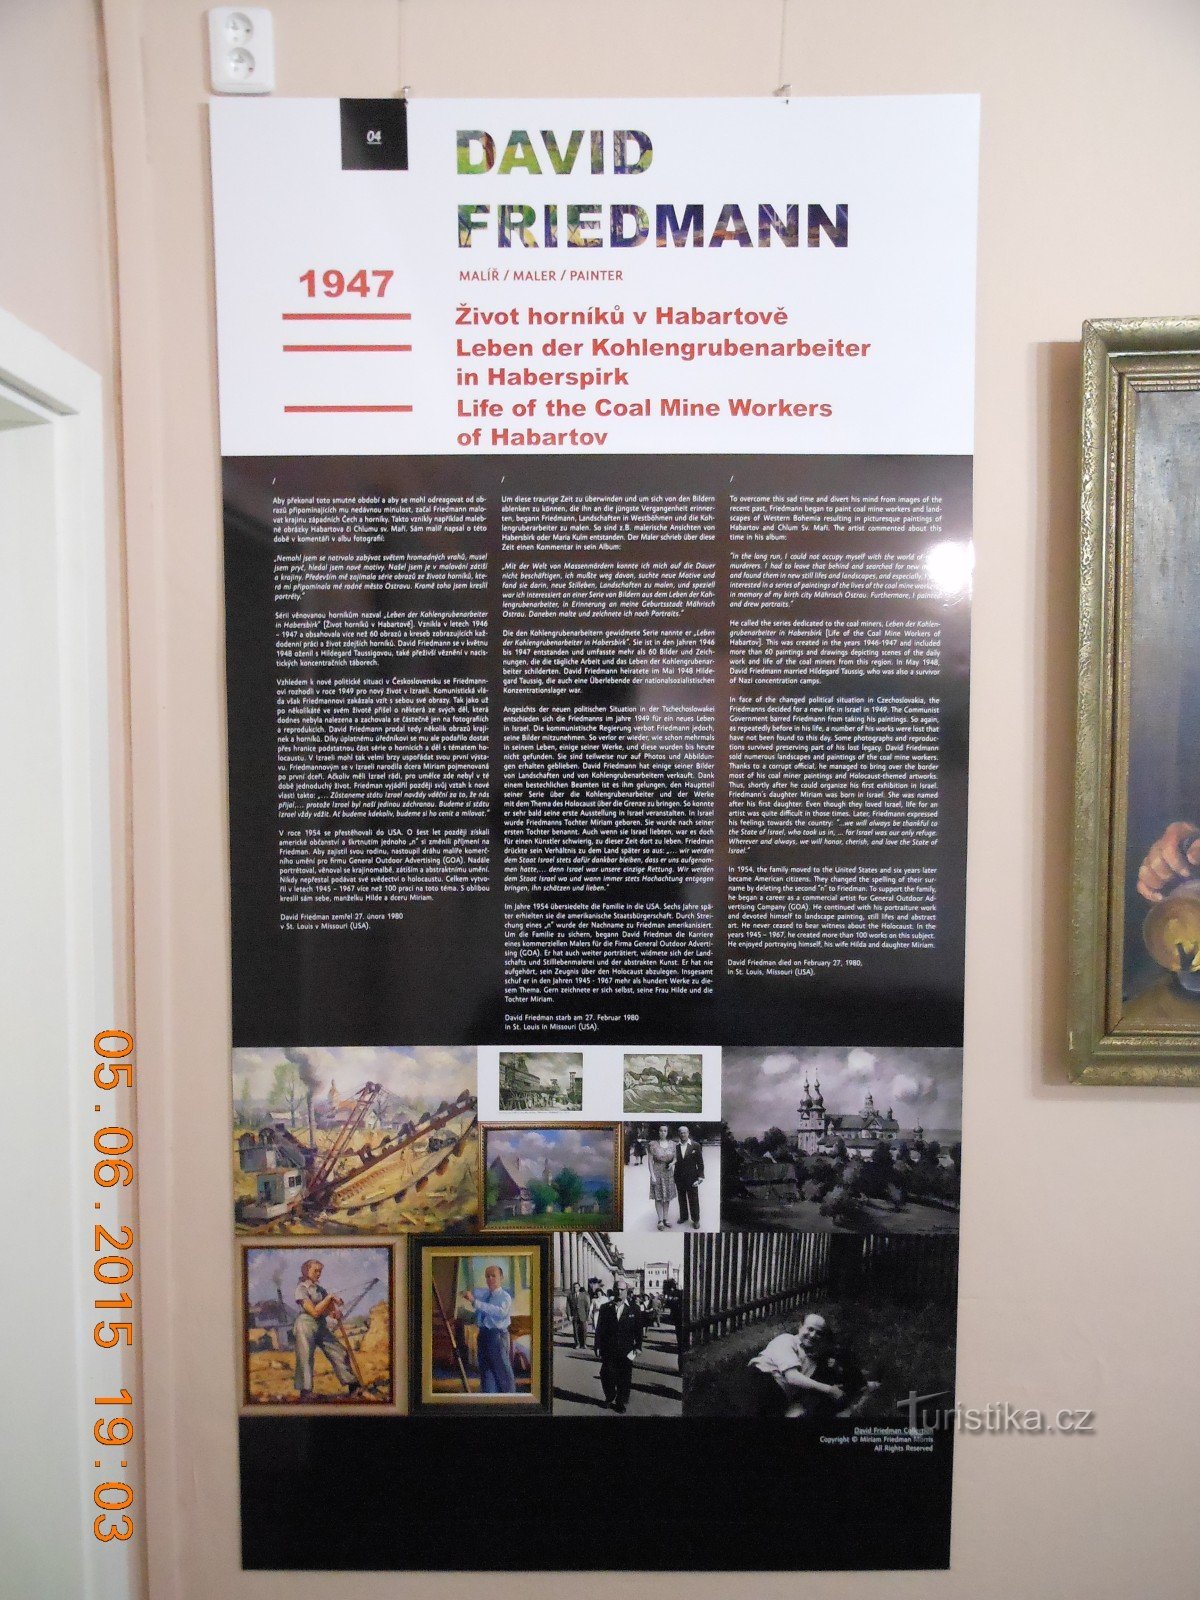 Triển lãm DAVID FRIEDMANN - Bảo tàng Sokolov